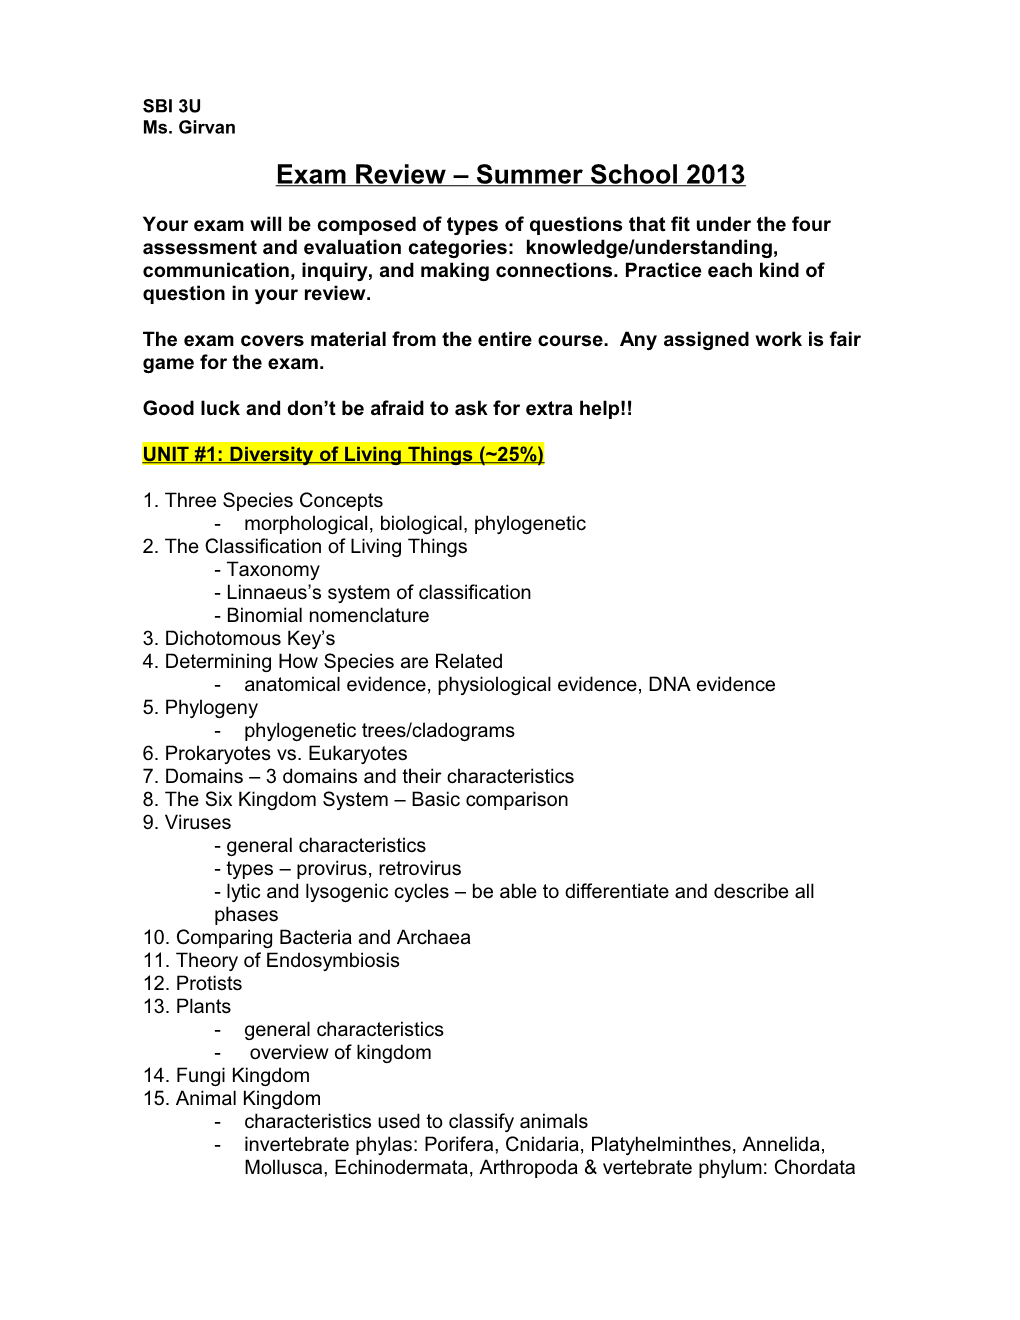 Exam Review Summer School 2013